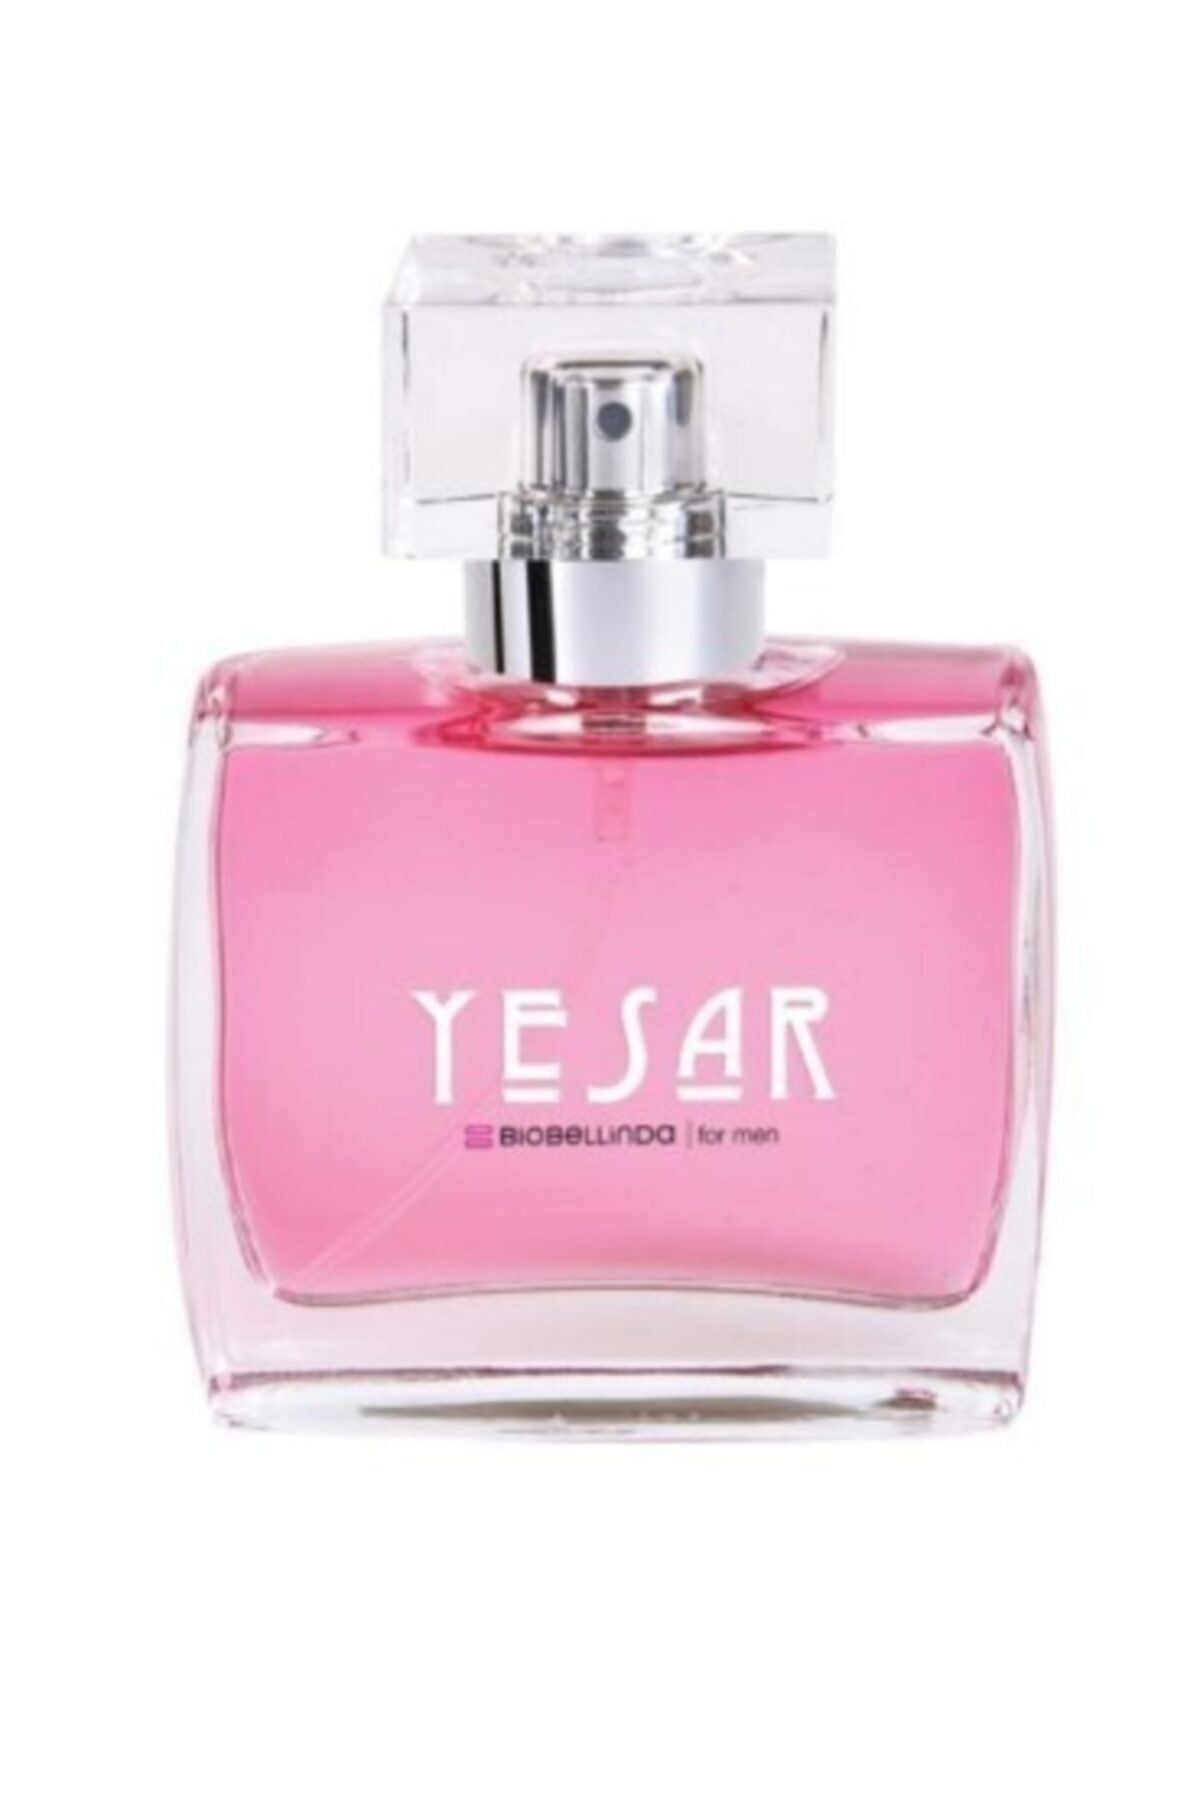 BioBellinda Yesar Eau De Parfume For Men 50ml Edp